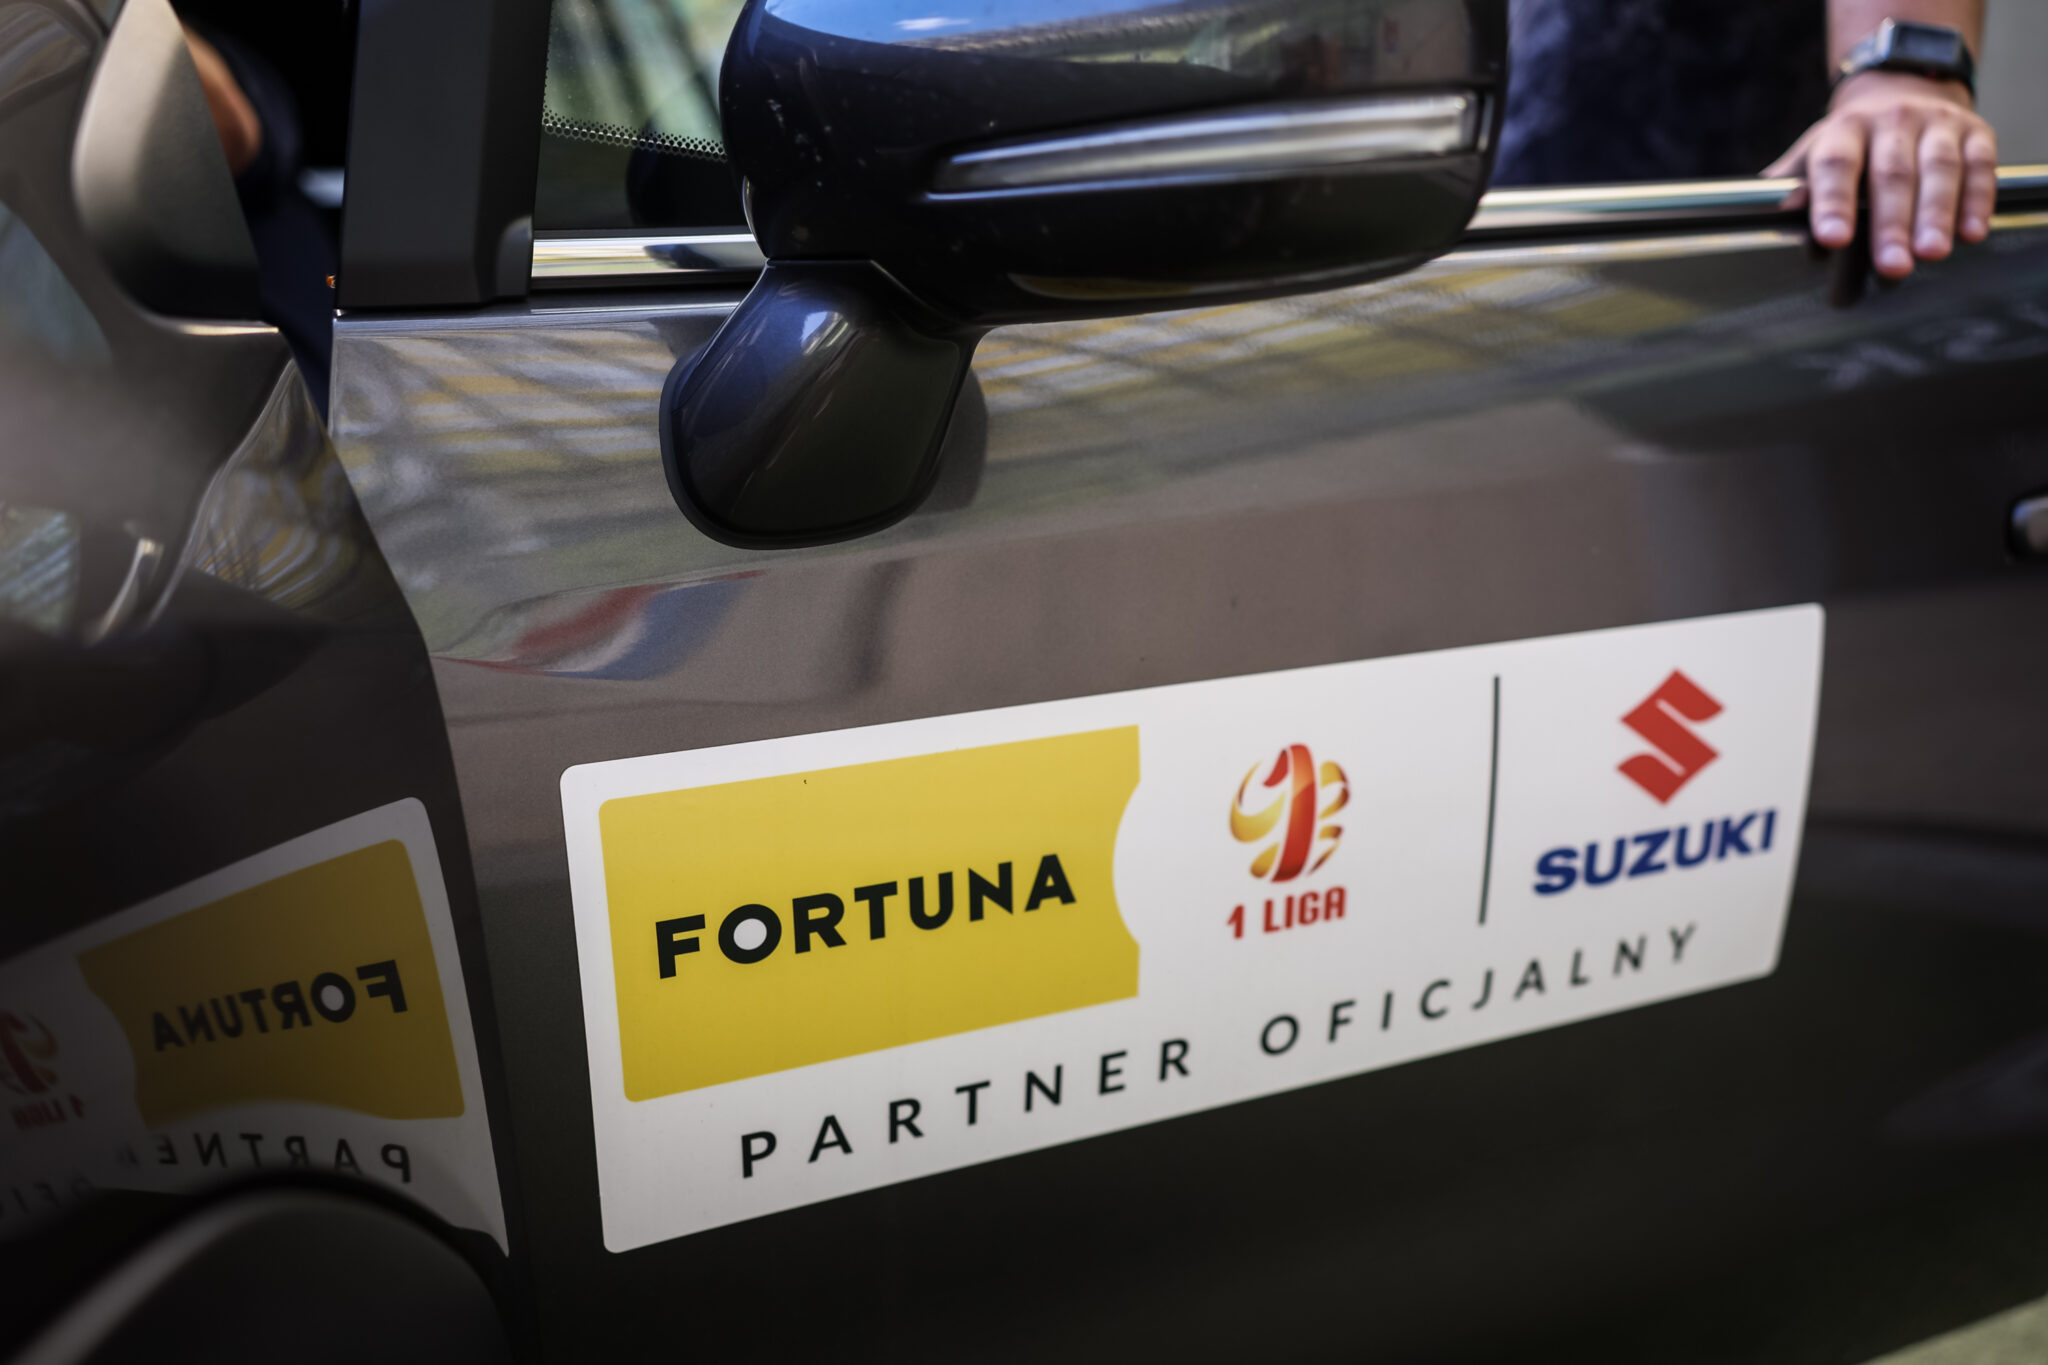 Suzuki na dłużej partnerem motoryzacyjnym Fortuna 1 Ligi